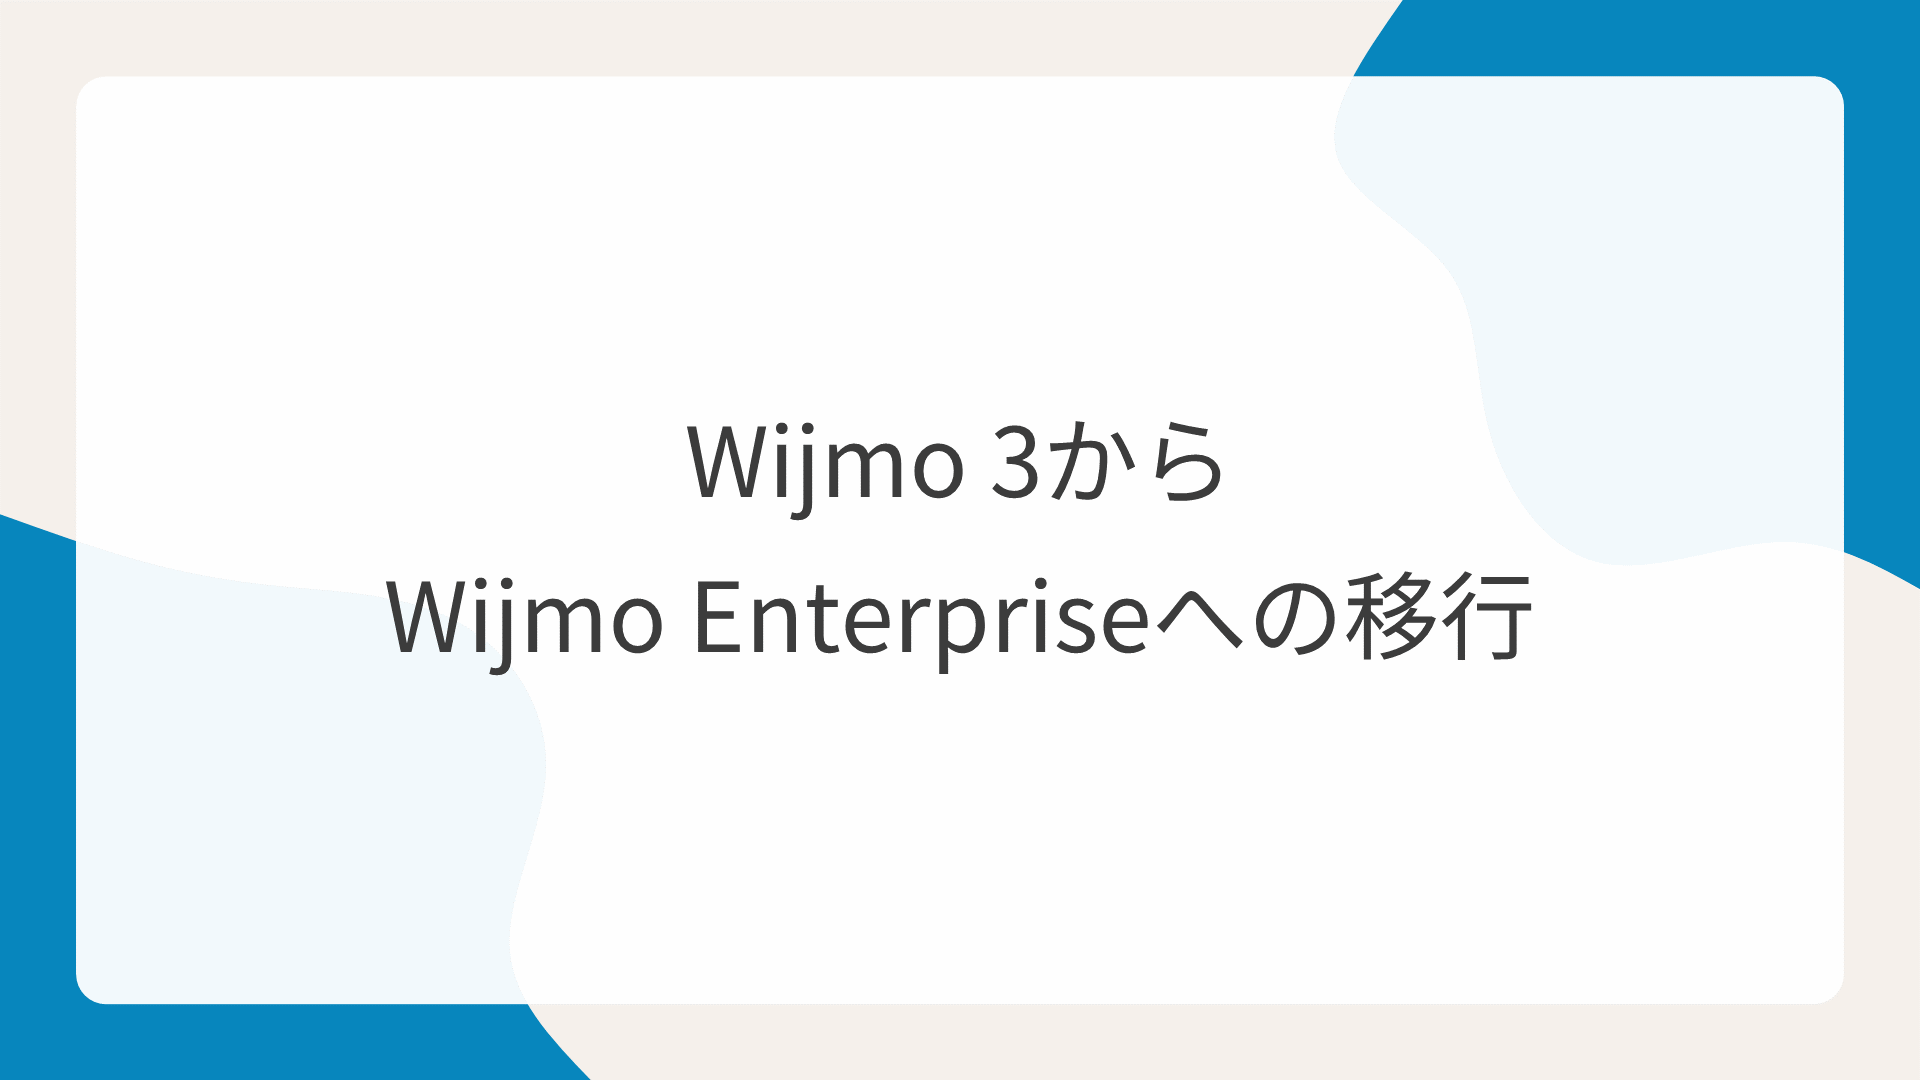 Wijmo 3からWijmo Enterpriseへの移行